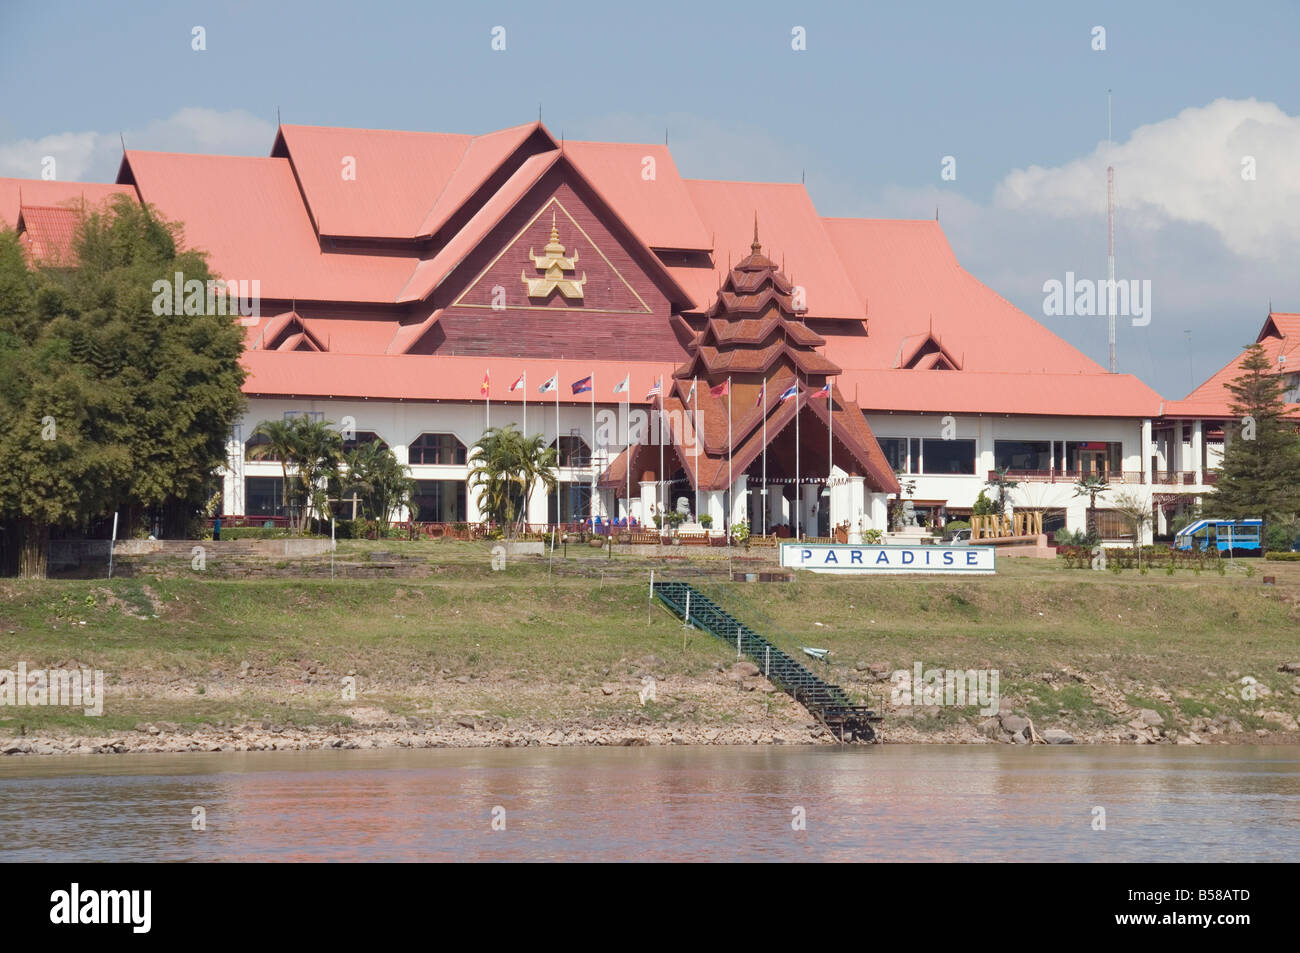 Casinò sul fiume Mekong in Birmania solo un breve tragitto in barca dalla Thailandia, dove il gioco d'azzardo è illegale, Myanmar (Birmania) Foto Stock